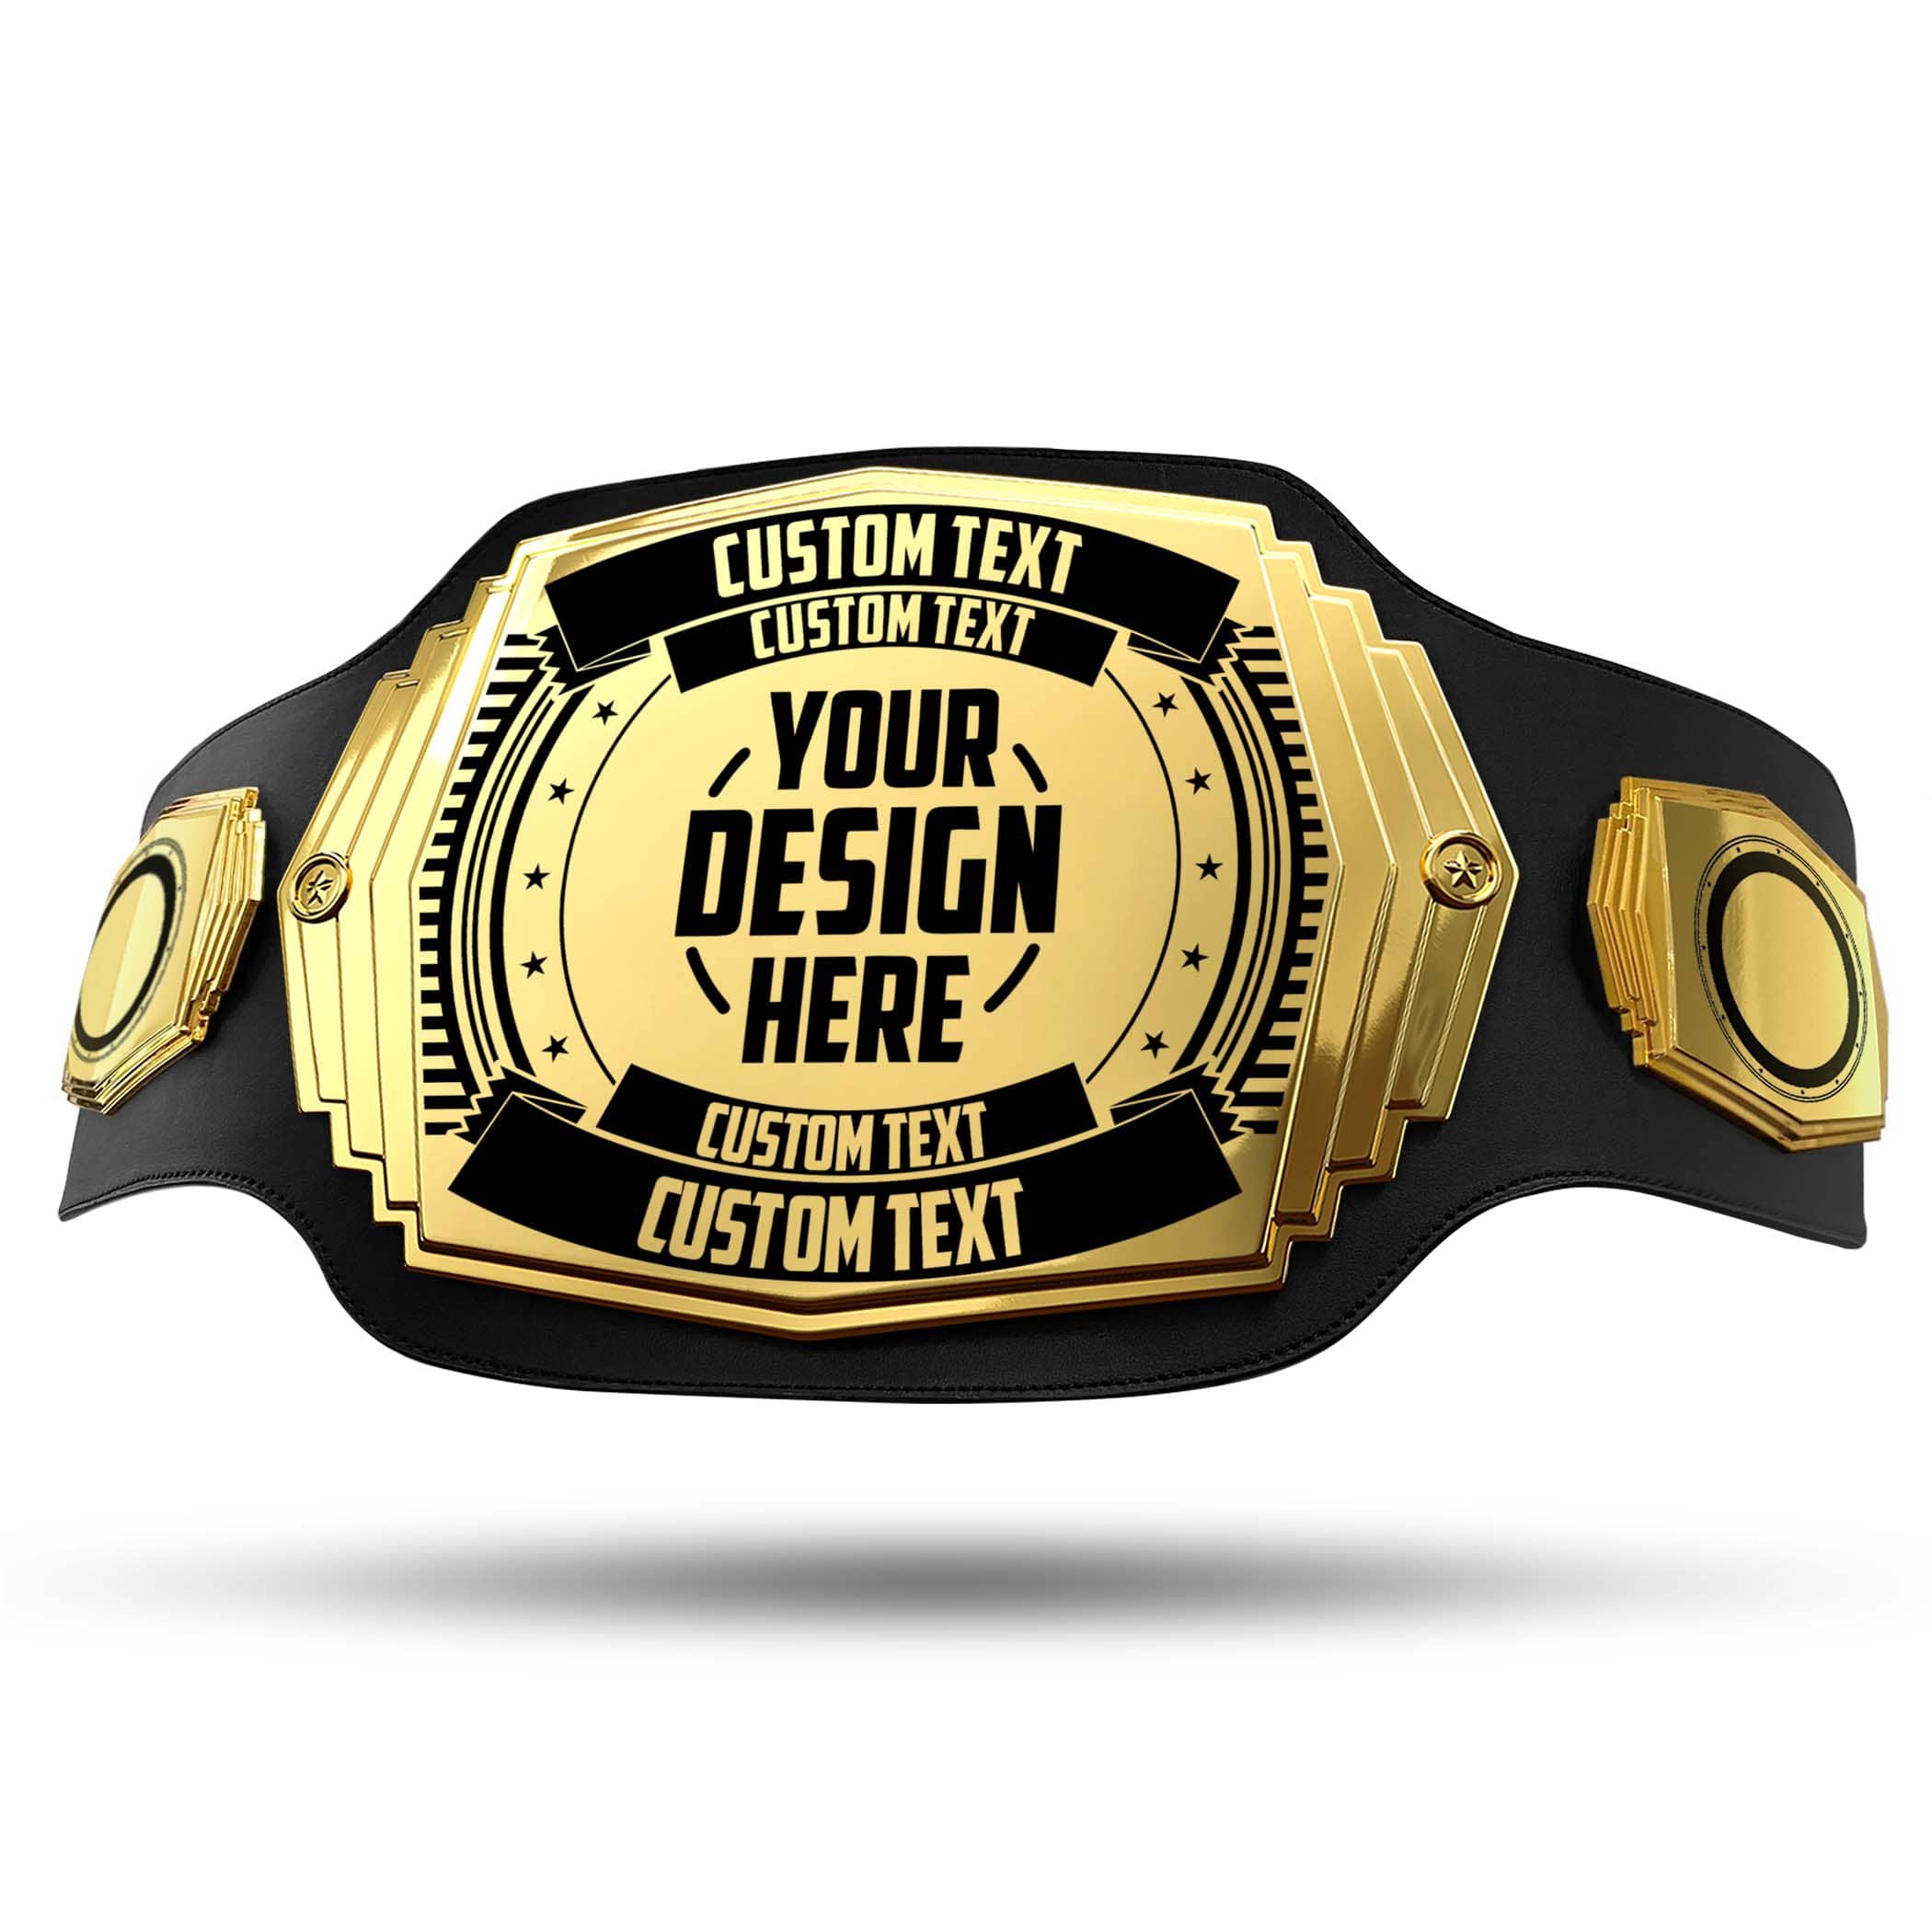 Custom Championship Belt - 6lb Title Belts